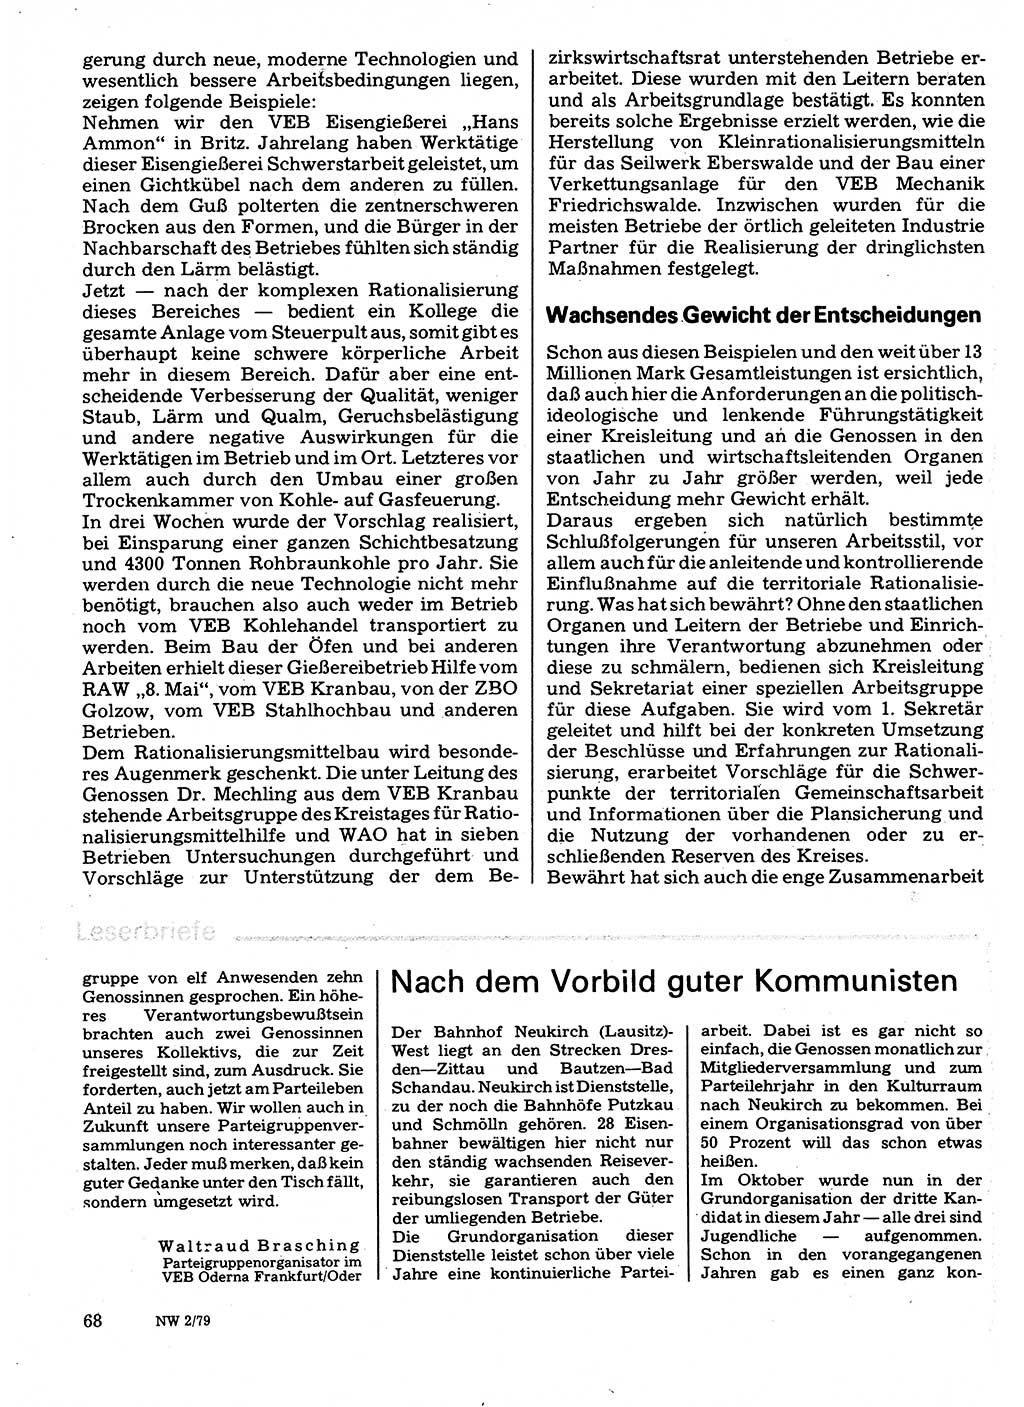 Neuer Weg (NW), Organ des Zentralkomitees (ZK) der SED (Sozialistische Einheitspartei Deutschlands) für Fragen des Parteilebens, 34. Jahrgang [Deutsche Demokratische Republik (DDR)] 1979, Seite 68 (NW ZK SED DDR 1979, S. 68)